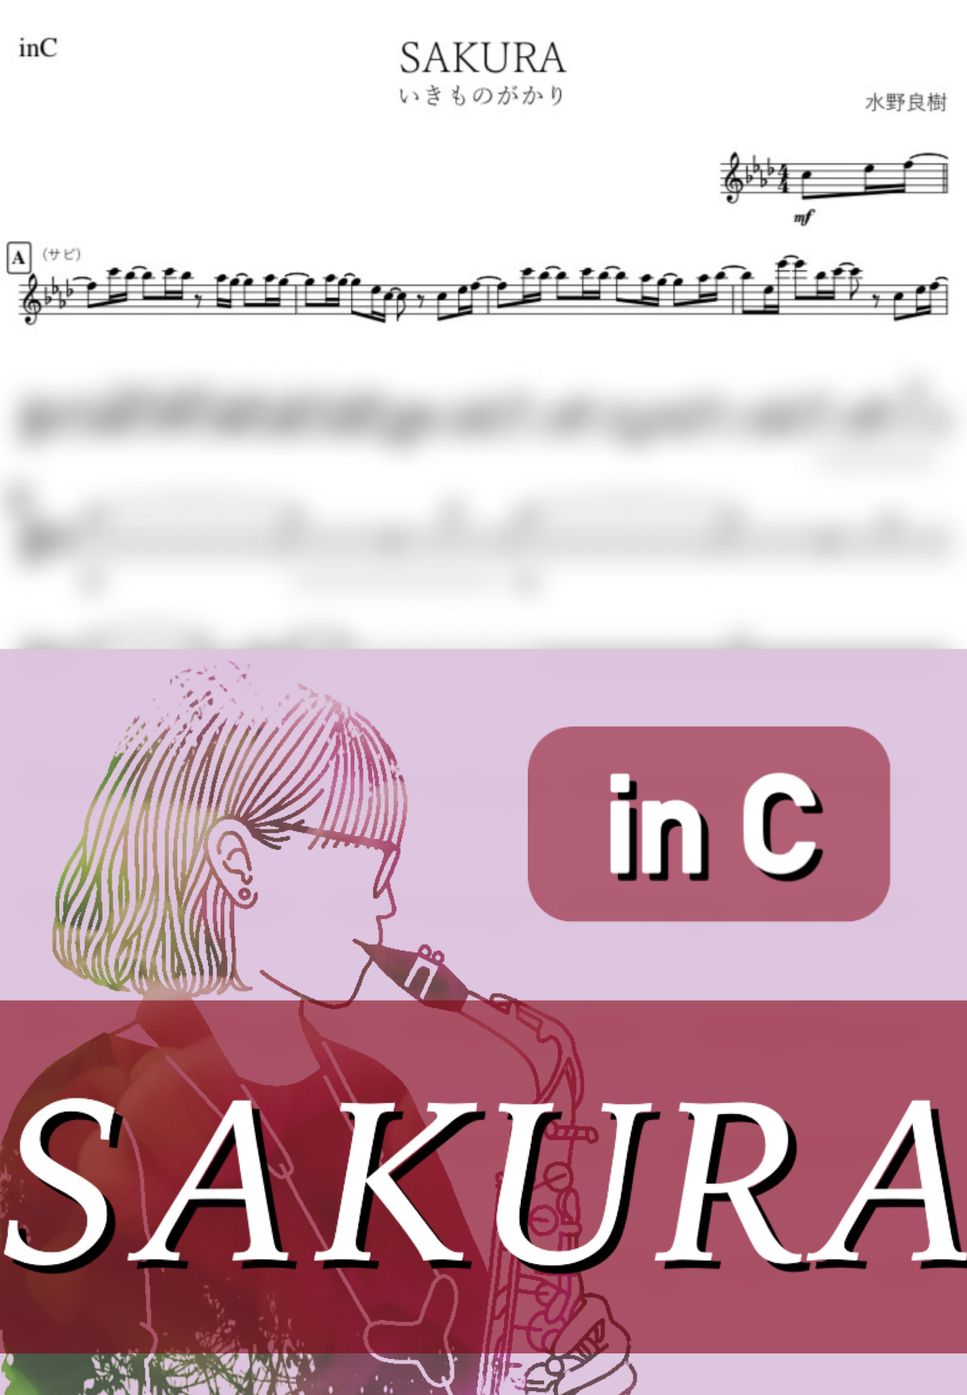 いきものがかり - SAKURA (C) by kanamusic